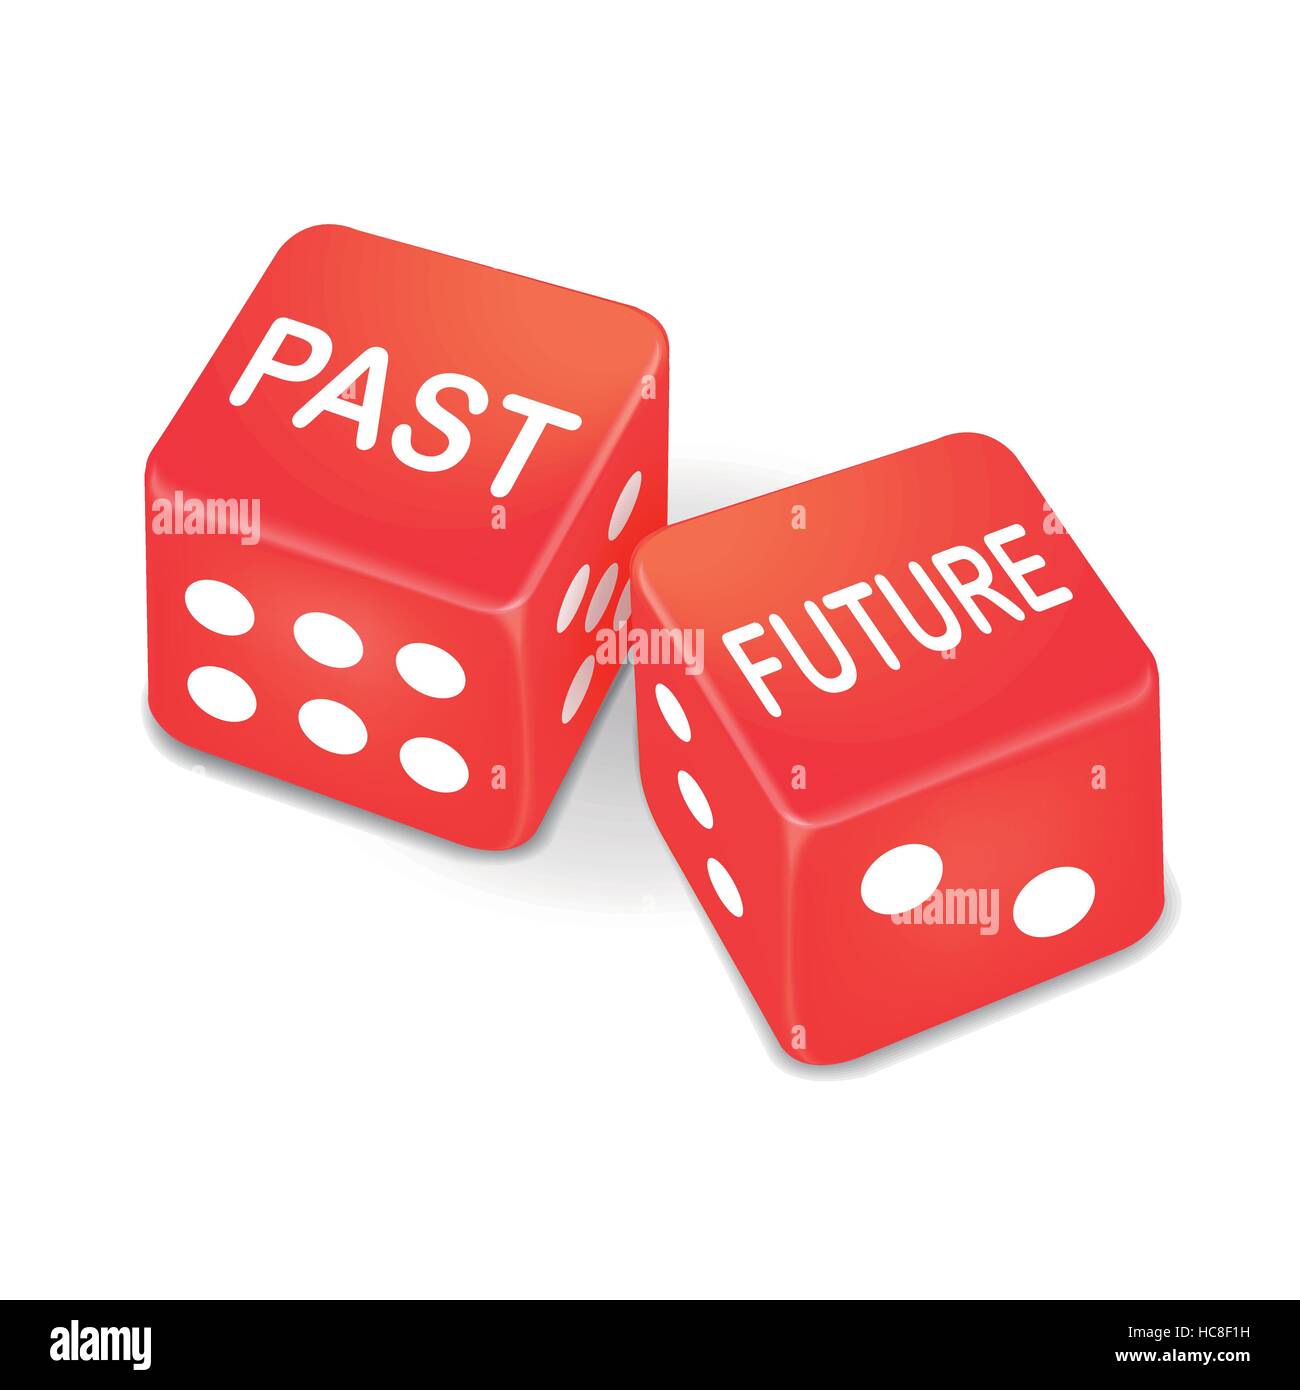 Vergangenheit und Zukunft Wörter auf zwei roten Würfel auf weißem Hintergrund Stock Vektor